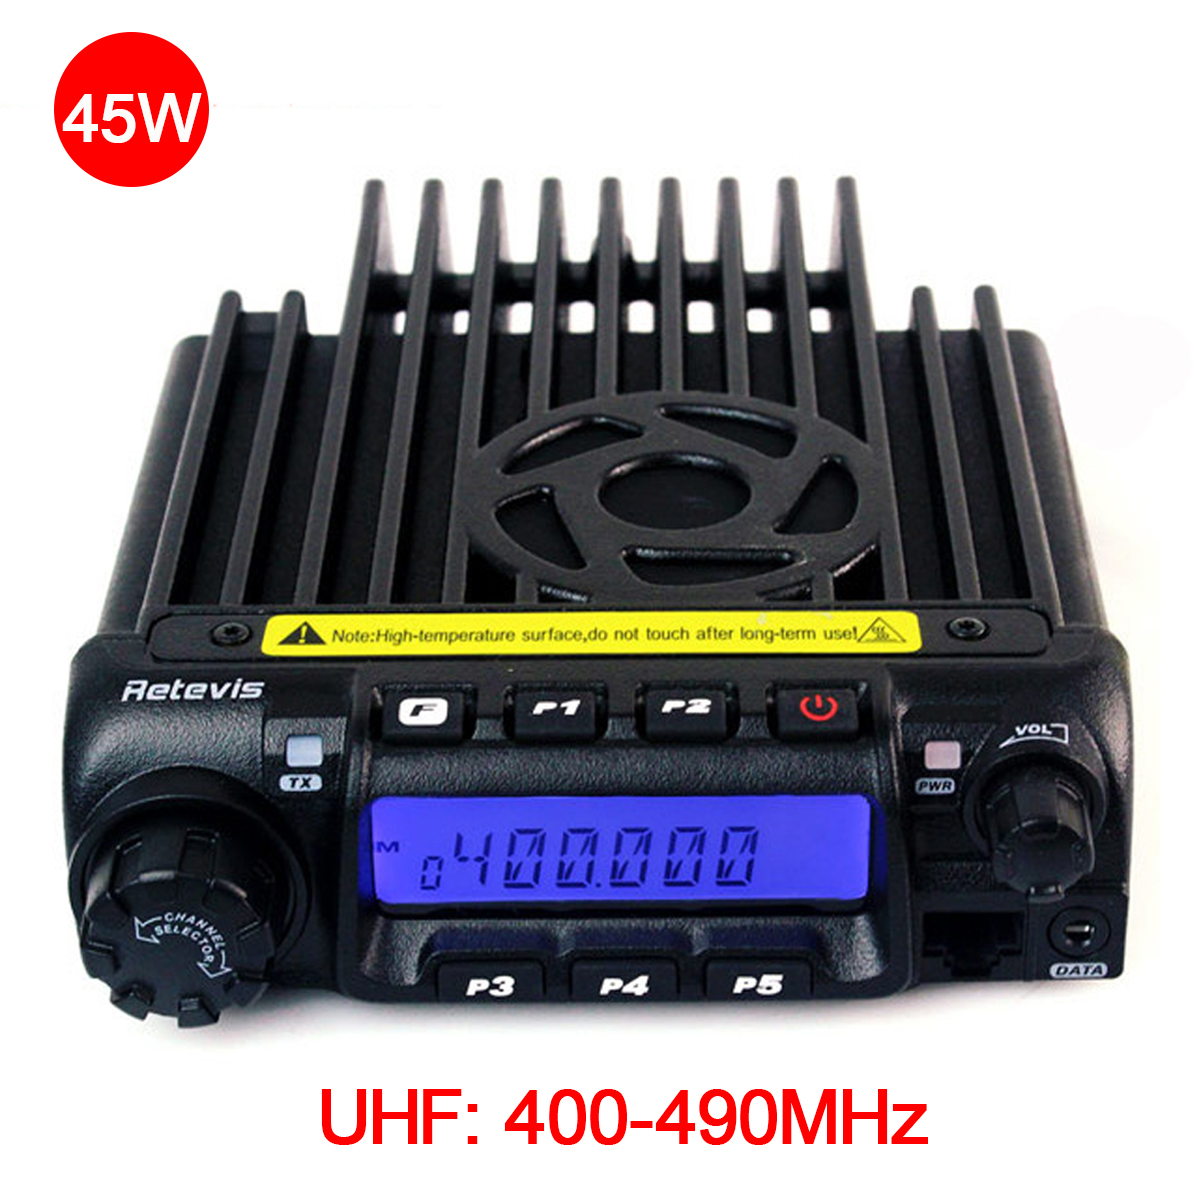 Retevis RT-9000D VHF 400-490MHz Mobile ...